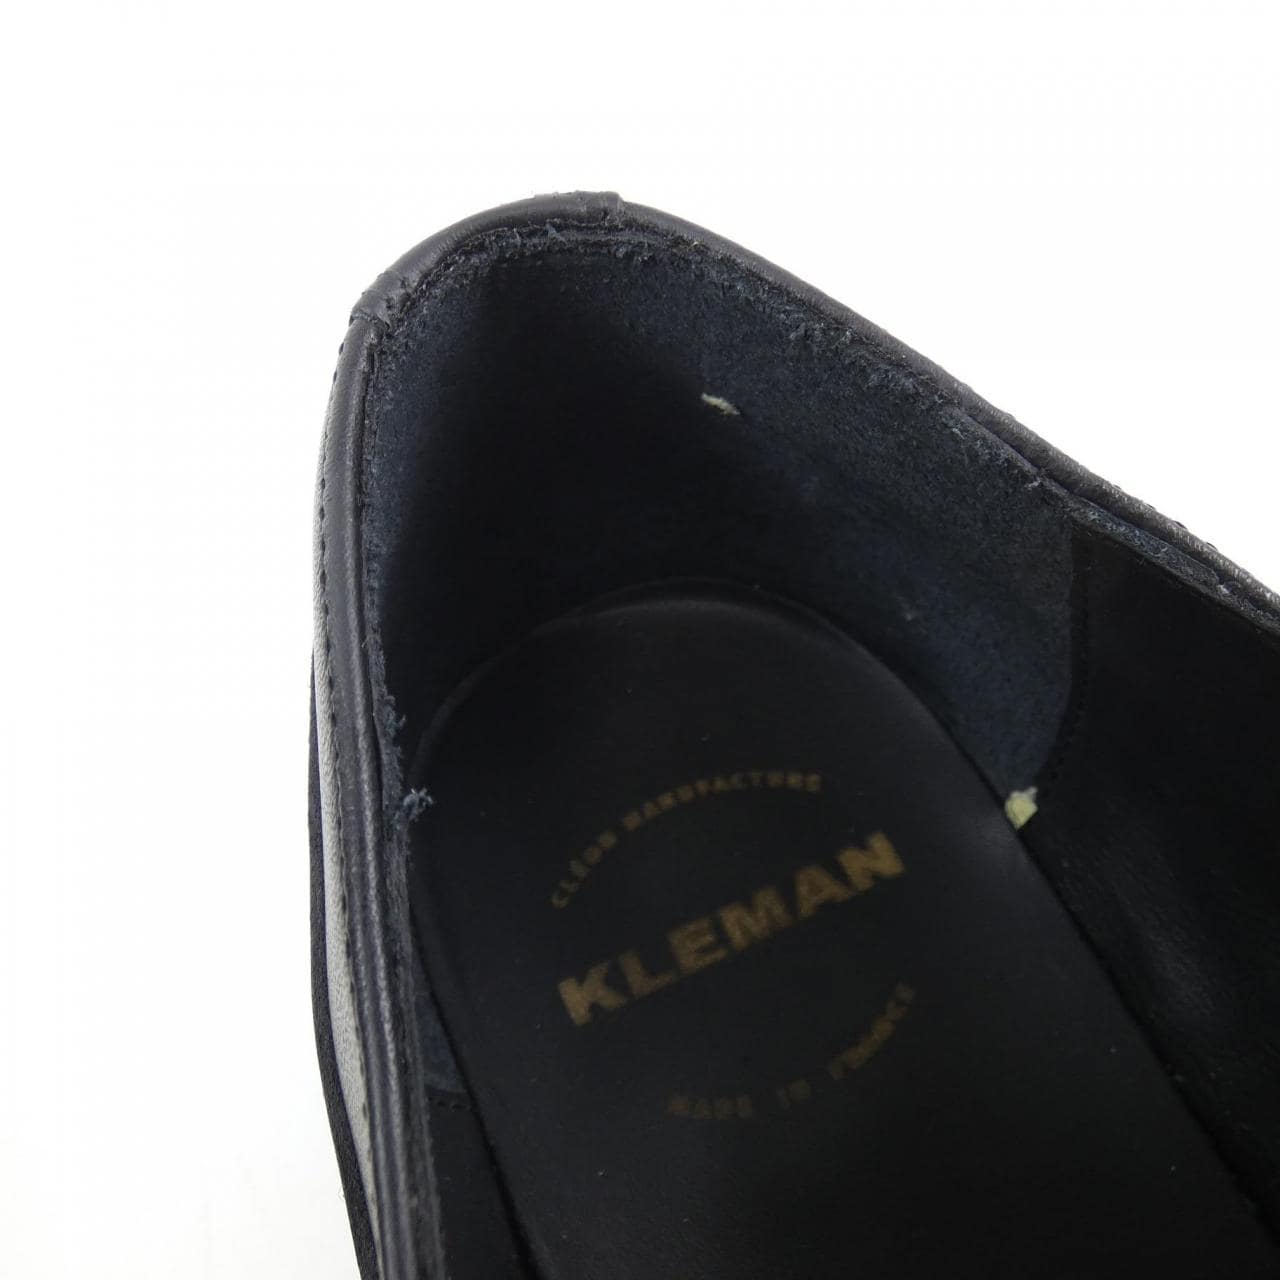 KLEMAN shoes